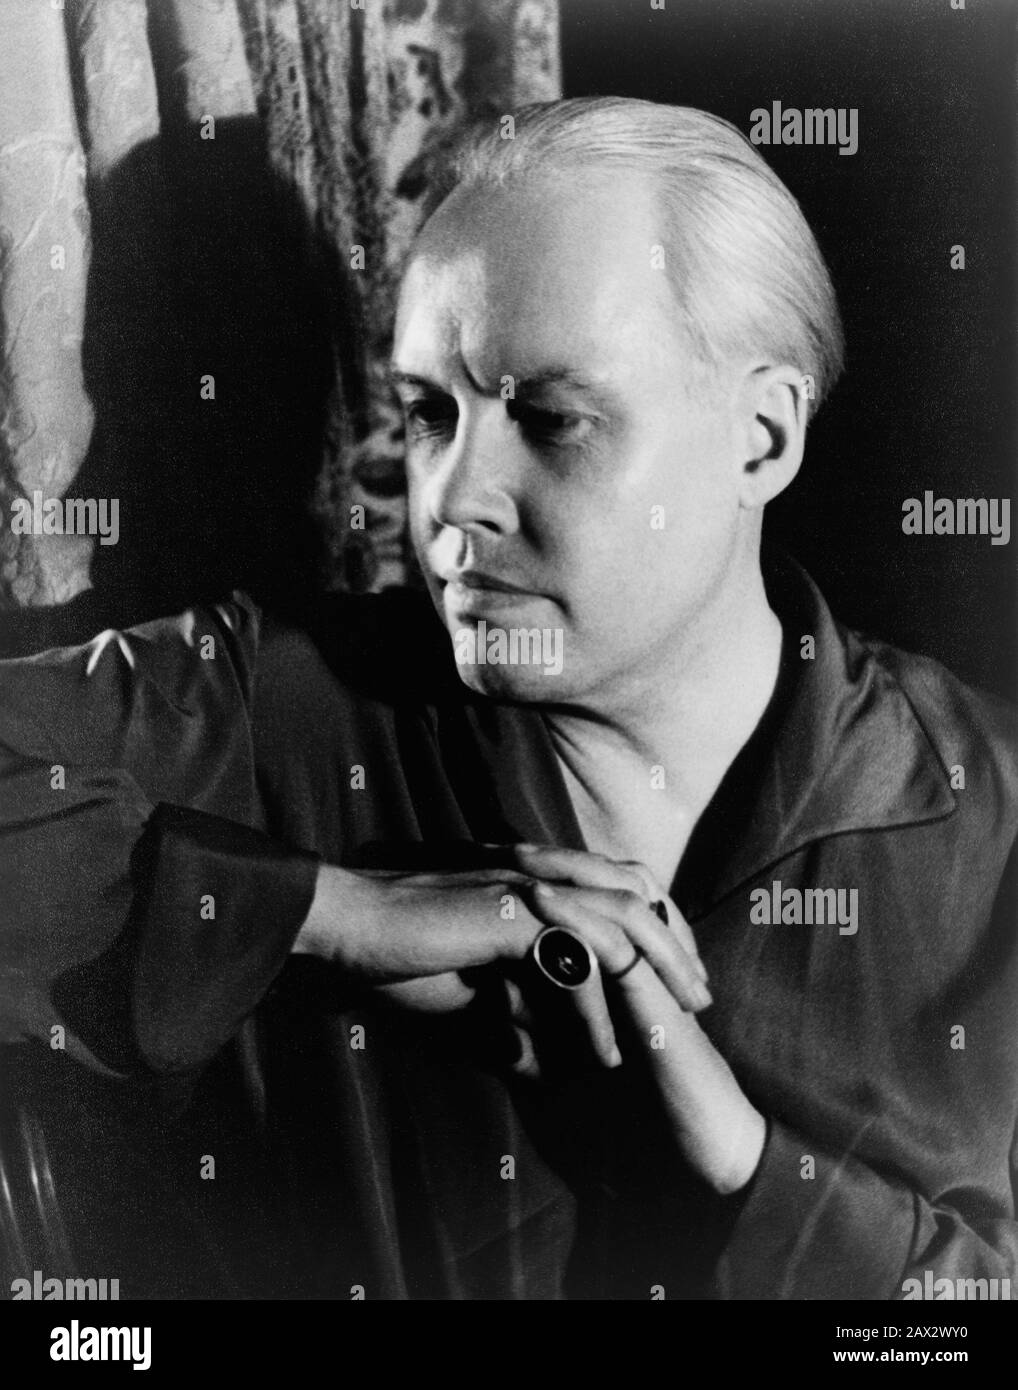 1934 , 3 april , USA  : The writer , critician , painter and photographer CARL VAN VECHTEN ( 1880 - 1964 ), self-portrait   - AUTORITRATTO - selfportrait  - FOTO STORICA STORICHE - HISTORY - FOTOGRAFO - STORIA DELLA FOTOGRAFIA - gay - omosessuale -  omosessualità - LGBT - - homosexual - homosexuality - anello - ring - white hair - capelli bianchi -  --- Archivio GBB Stock Photo